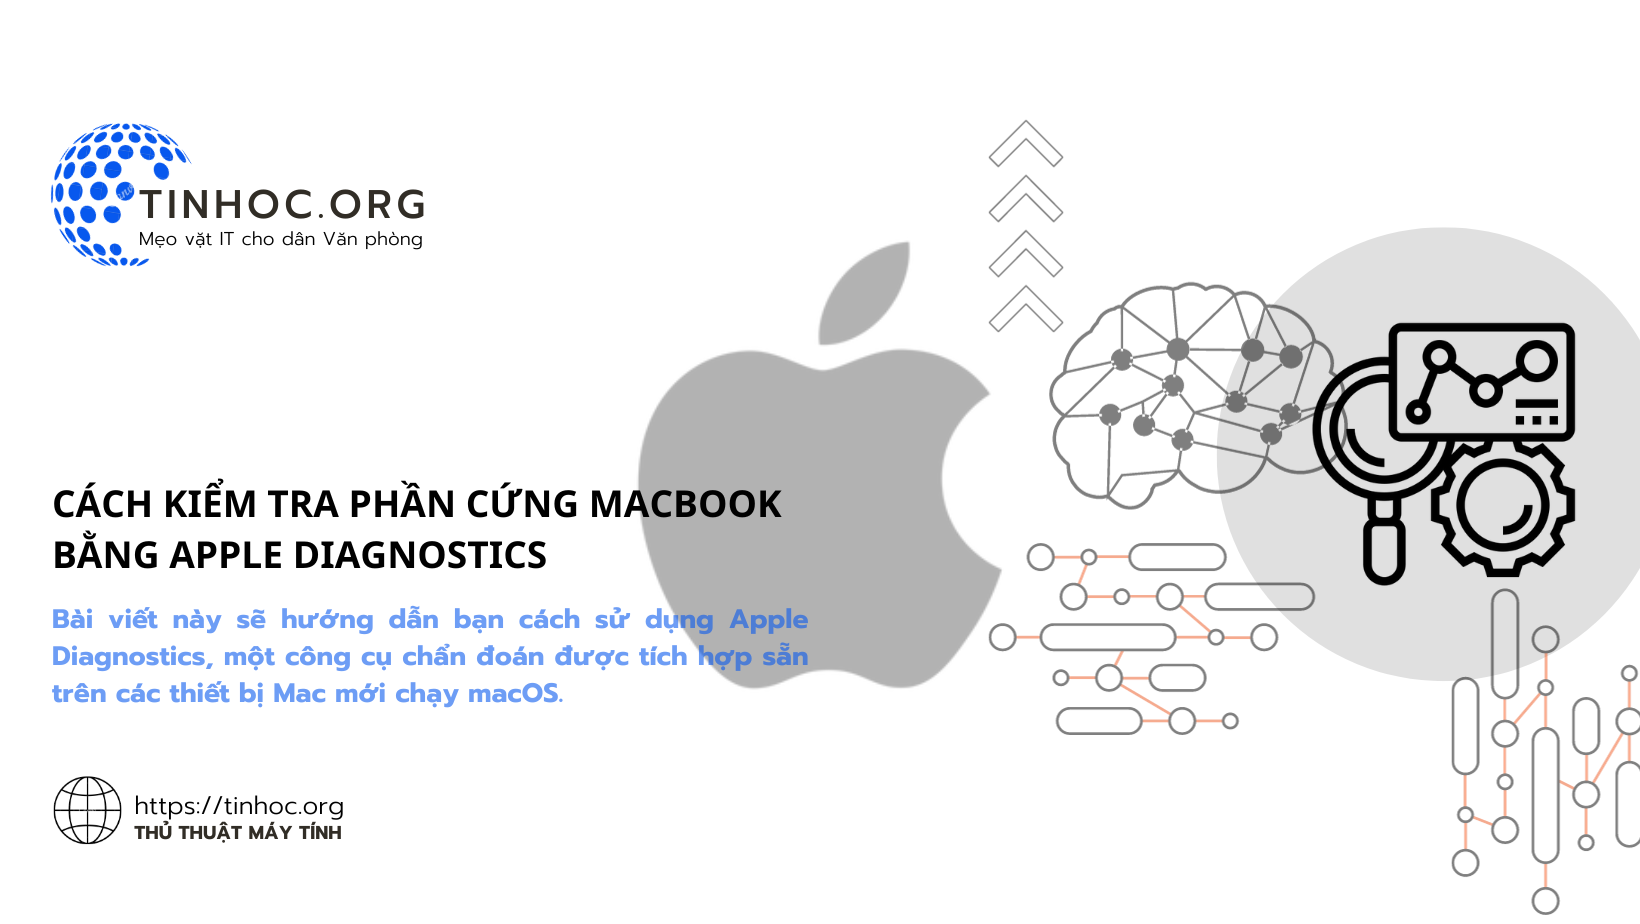 Cách kiểm tra phần cứng MacBook bằng Apple Diagnostics